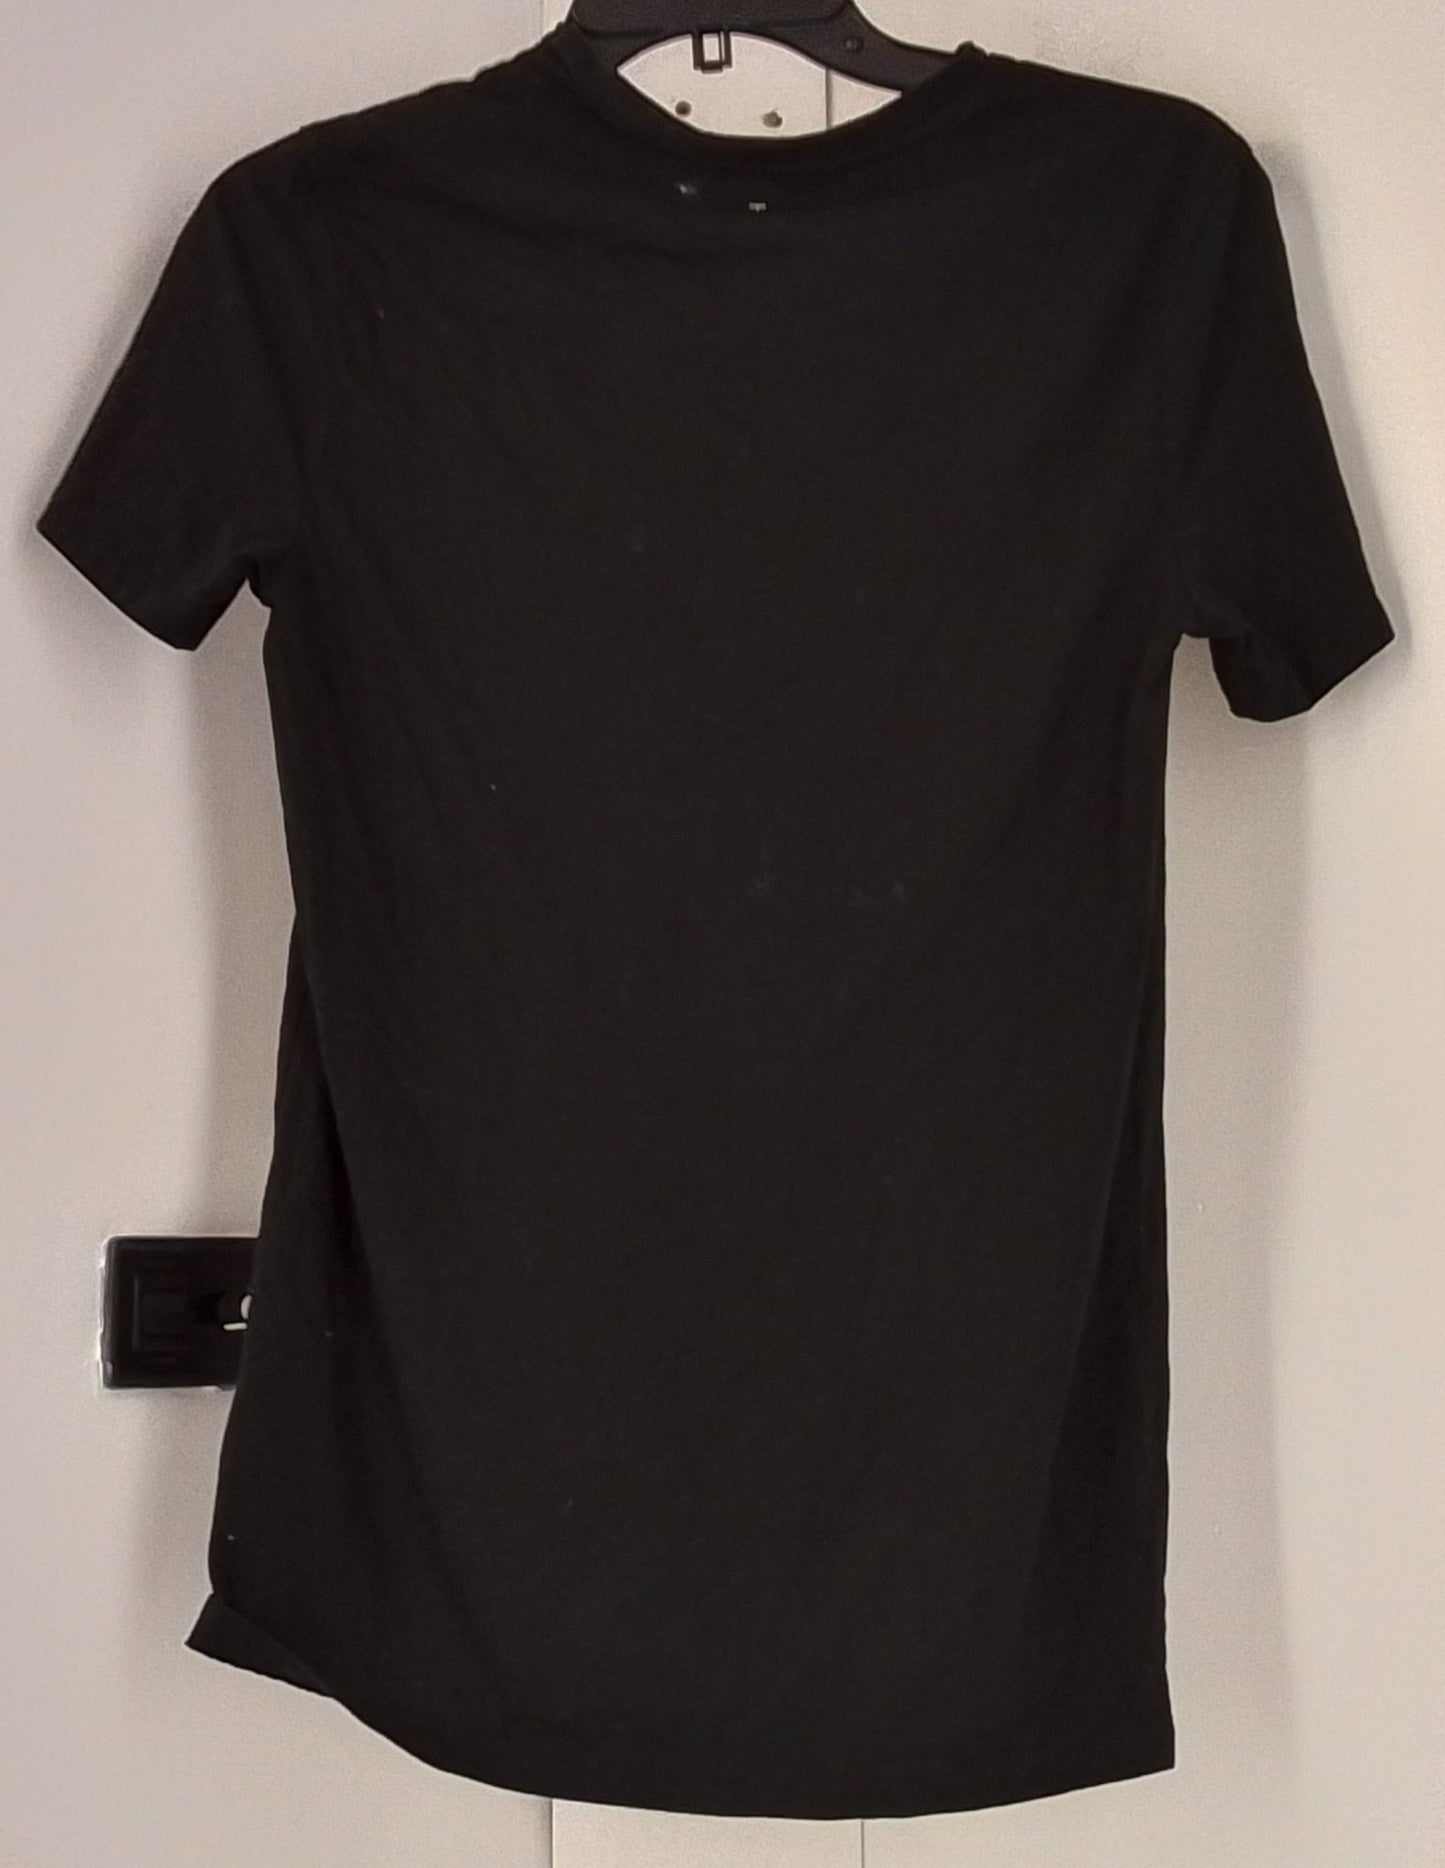 Goodfellow & Co Men's Black T-Shirt